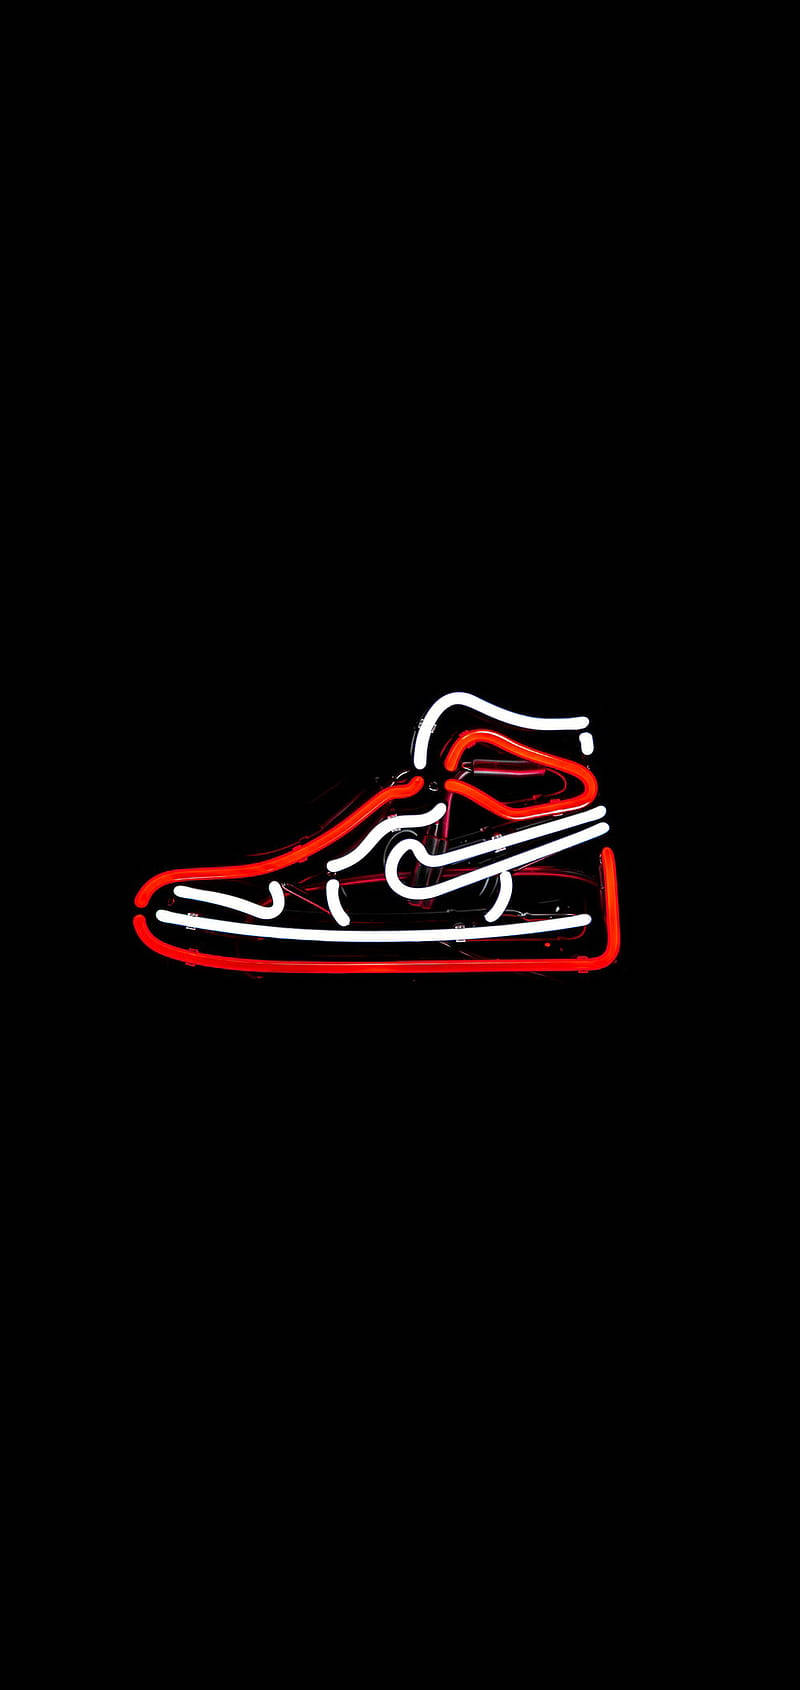 Neon Nike Air Jordan 1 Wallpaper